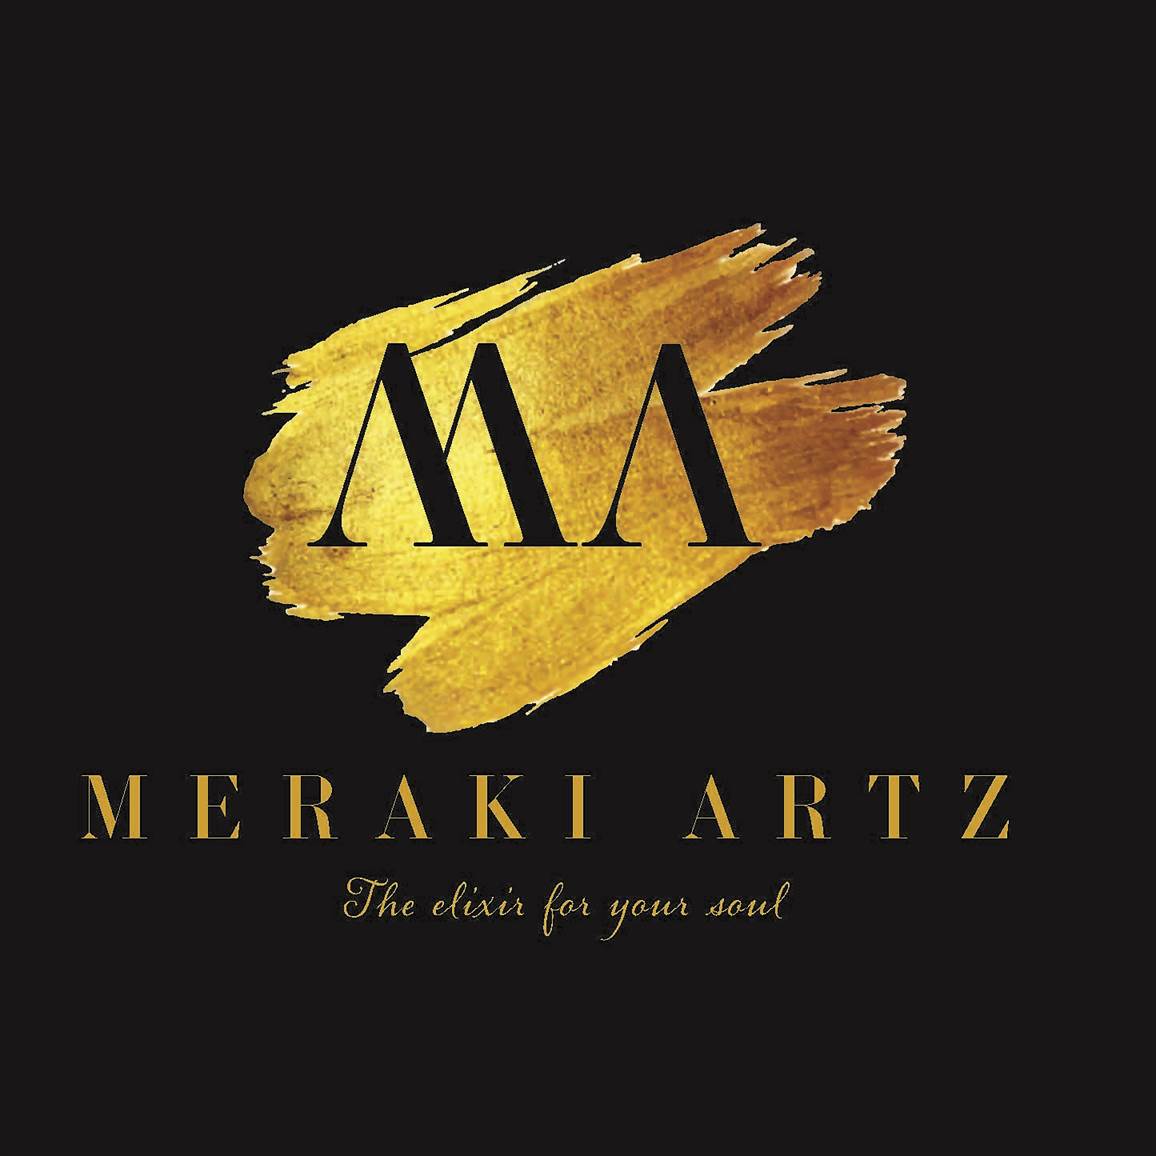 Le Meraki Arts